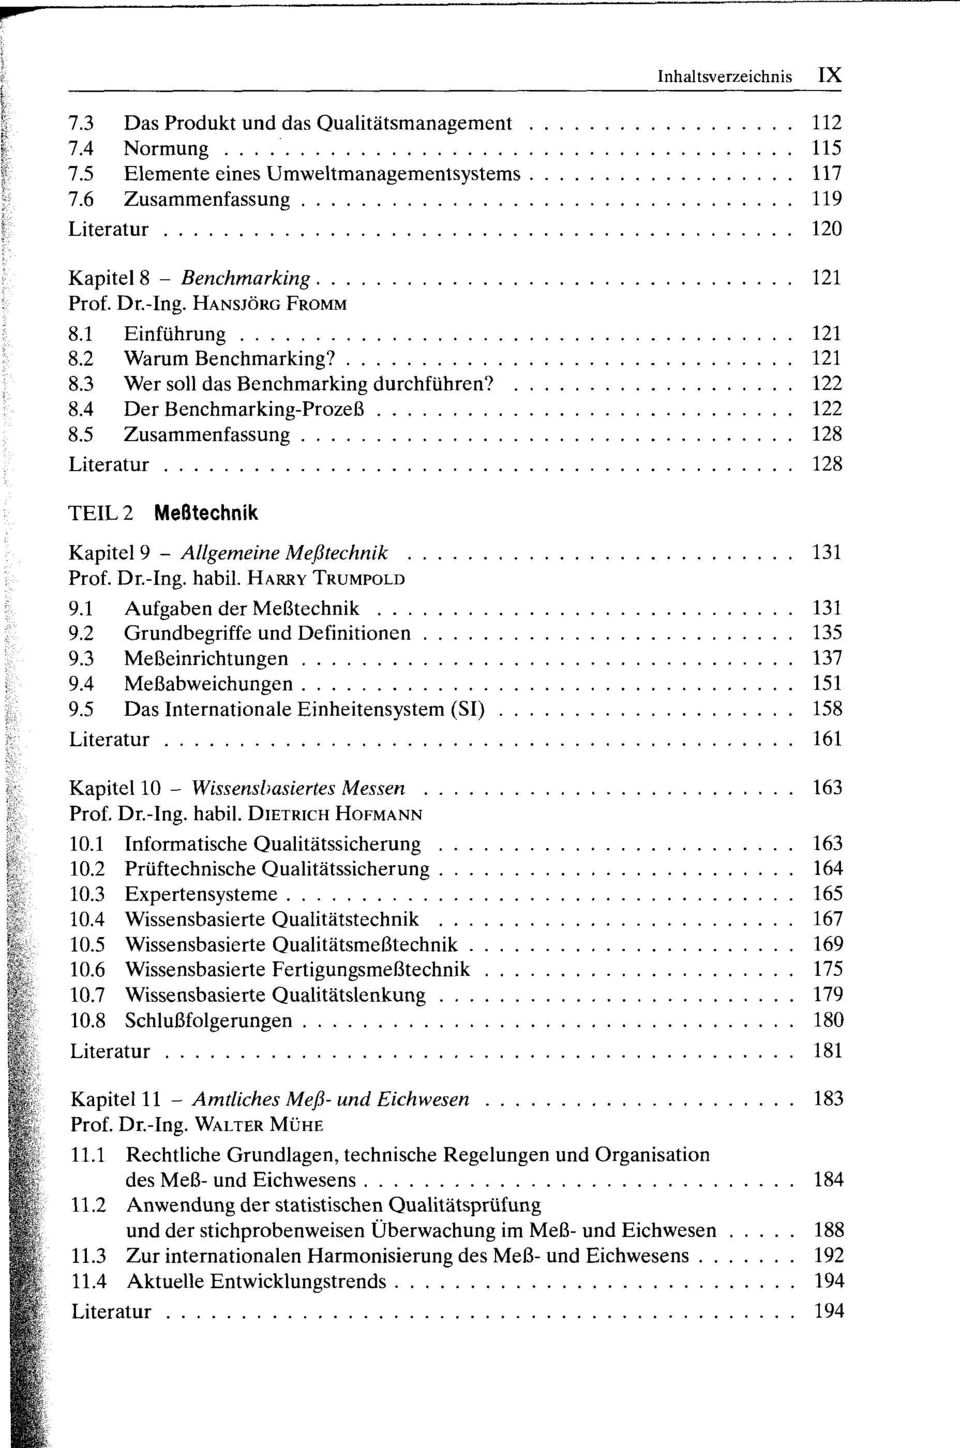 4 Der Benchmarking-Prozeß 122 8.5 Zusammenfassung 128 Literatur 128 TEIL 2 Meßtechnik Kapitel 9 - Allgemeine Meßtechnik 131 Prof. Dr.-Ing. habil. HARRY TRUMPOLD 9.1 Aufgaben der Meßtechnik 131 9.